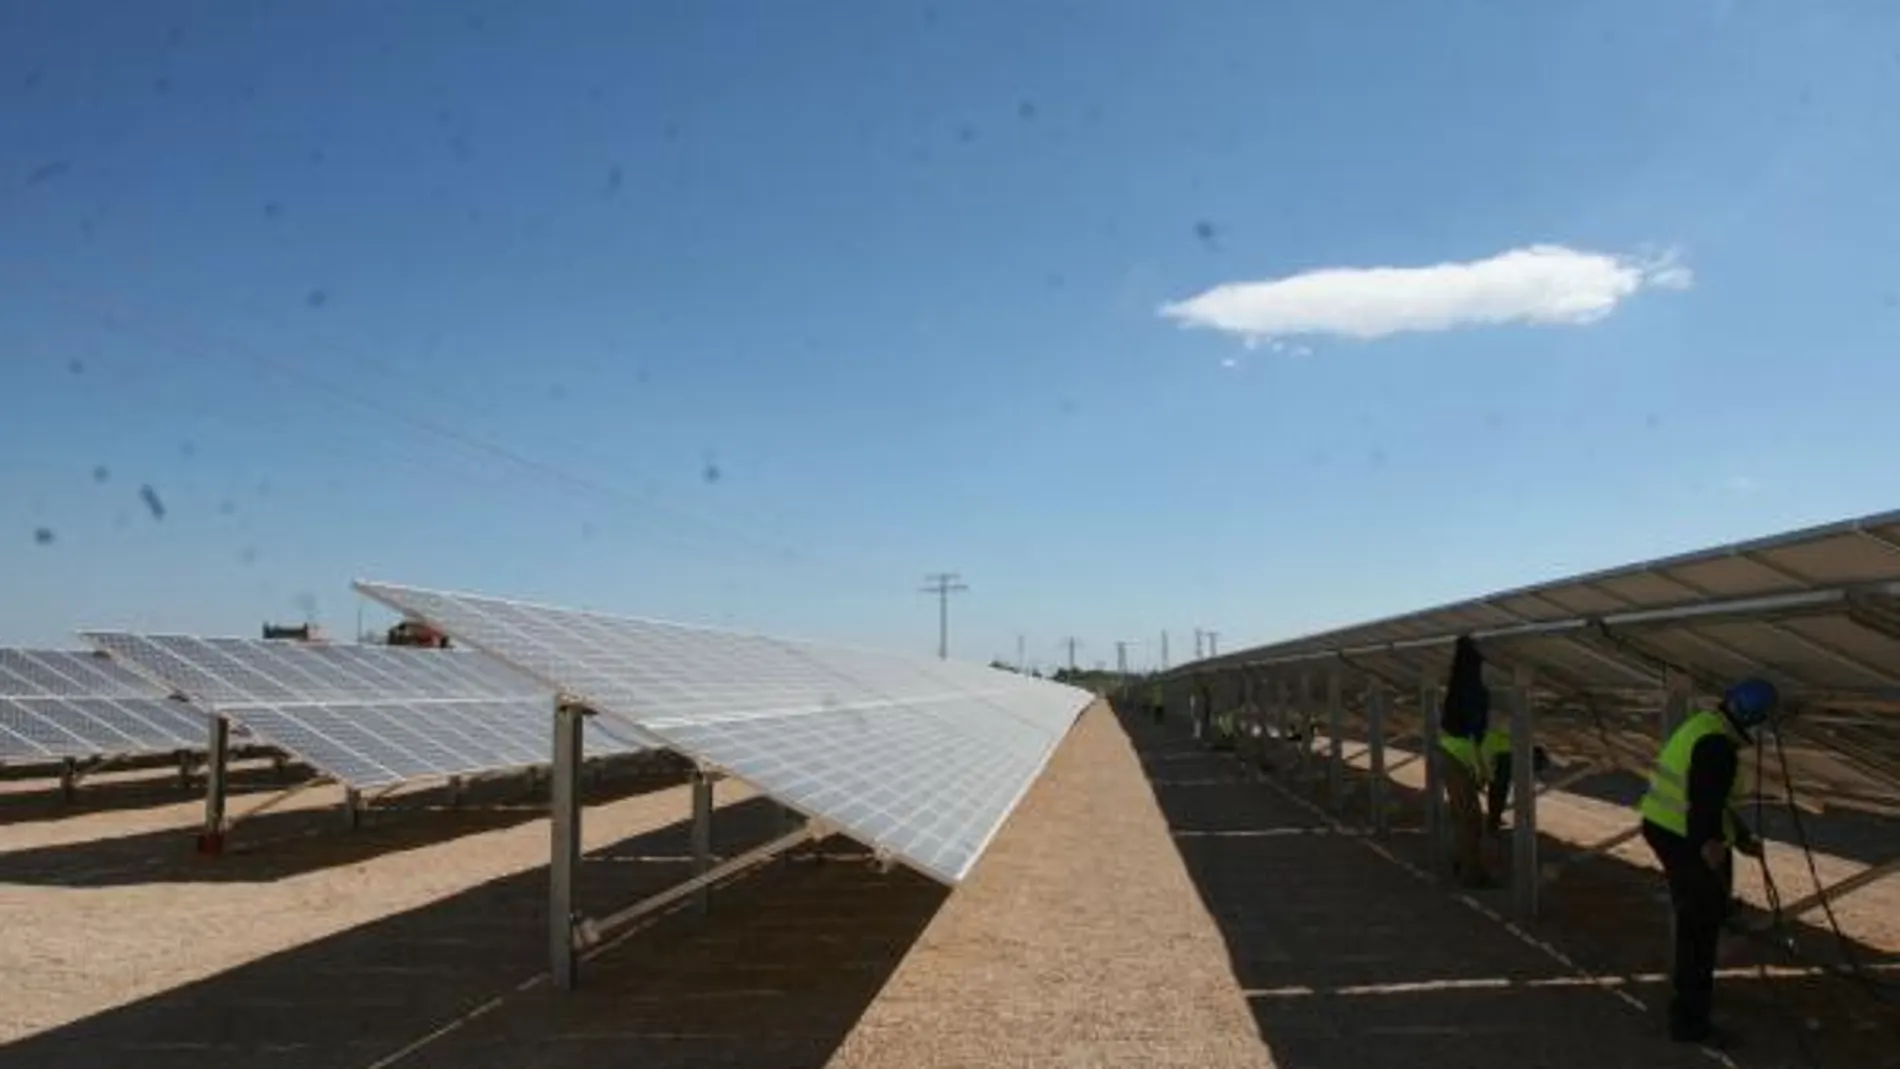 El Congreso subleva al sector fotovoltaico con al aprobar el decreto eléctrico